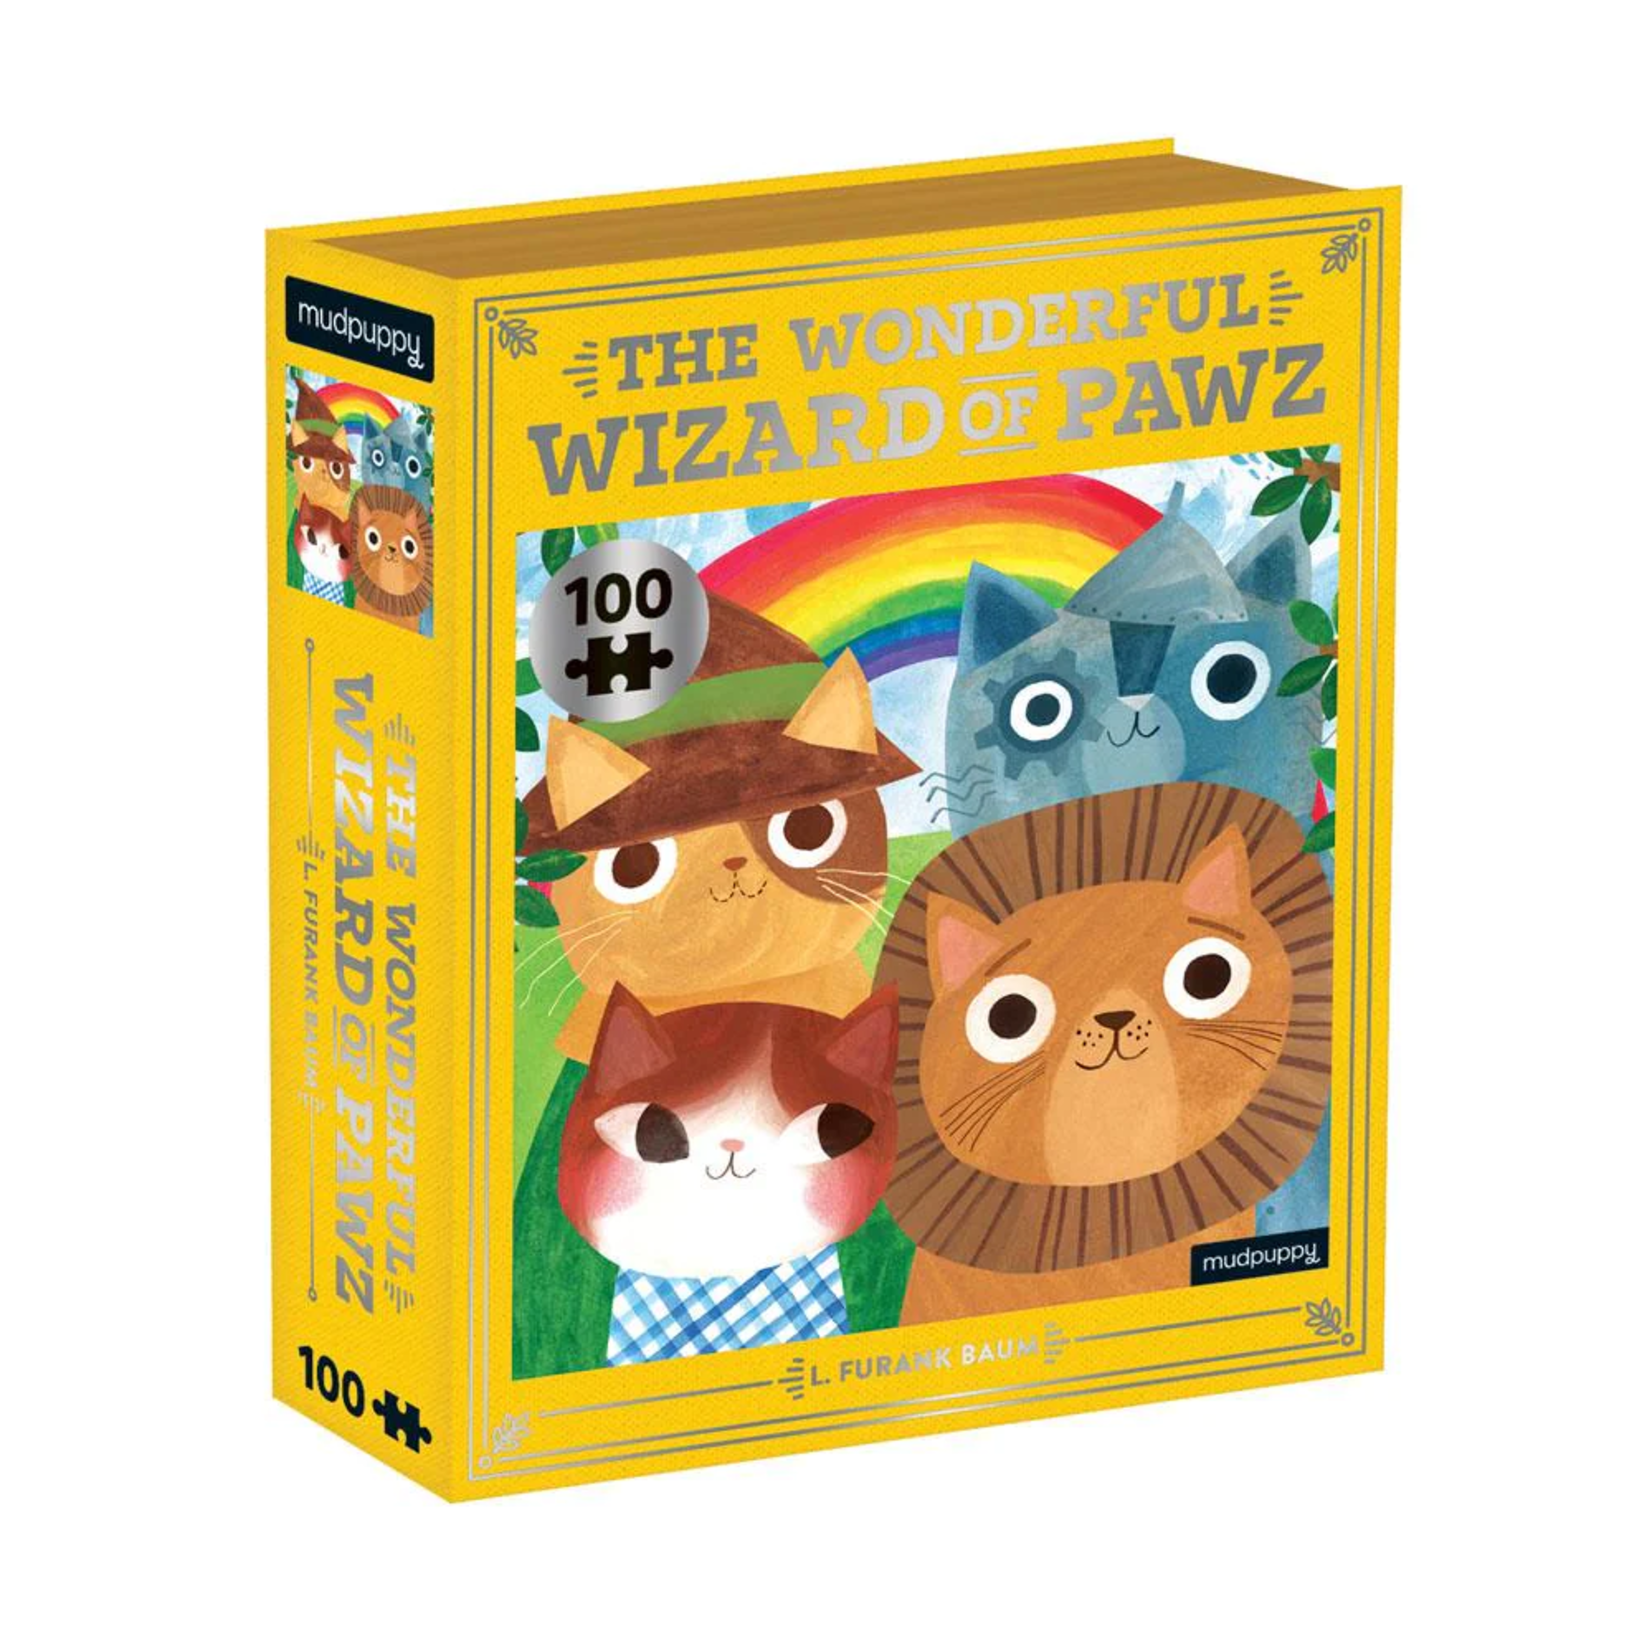 Mudpuppy 100 pc Puzzle The Wonderful World of Pawz